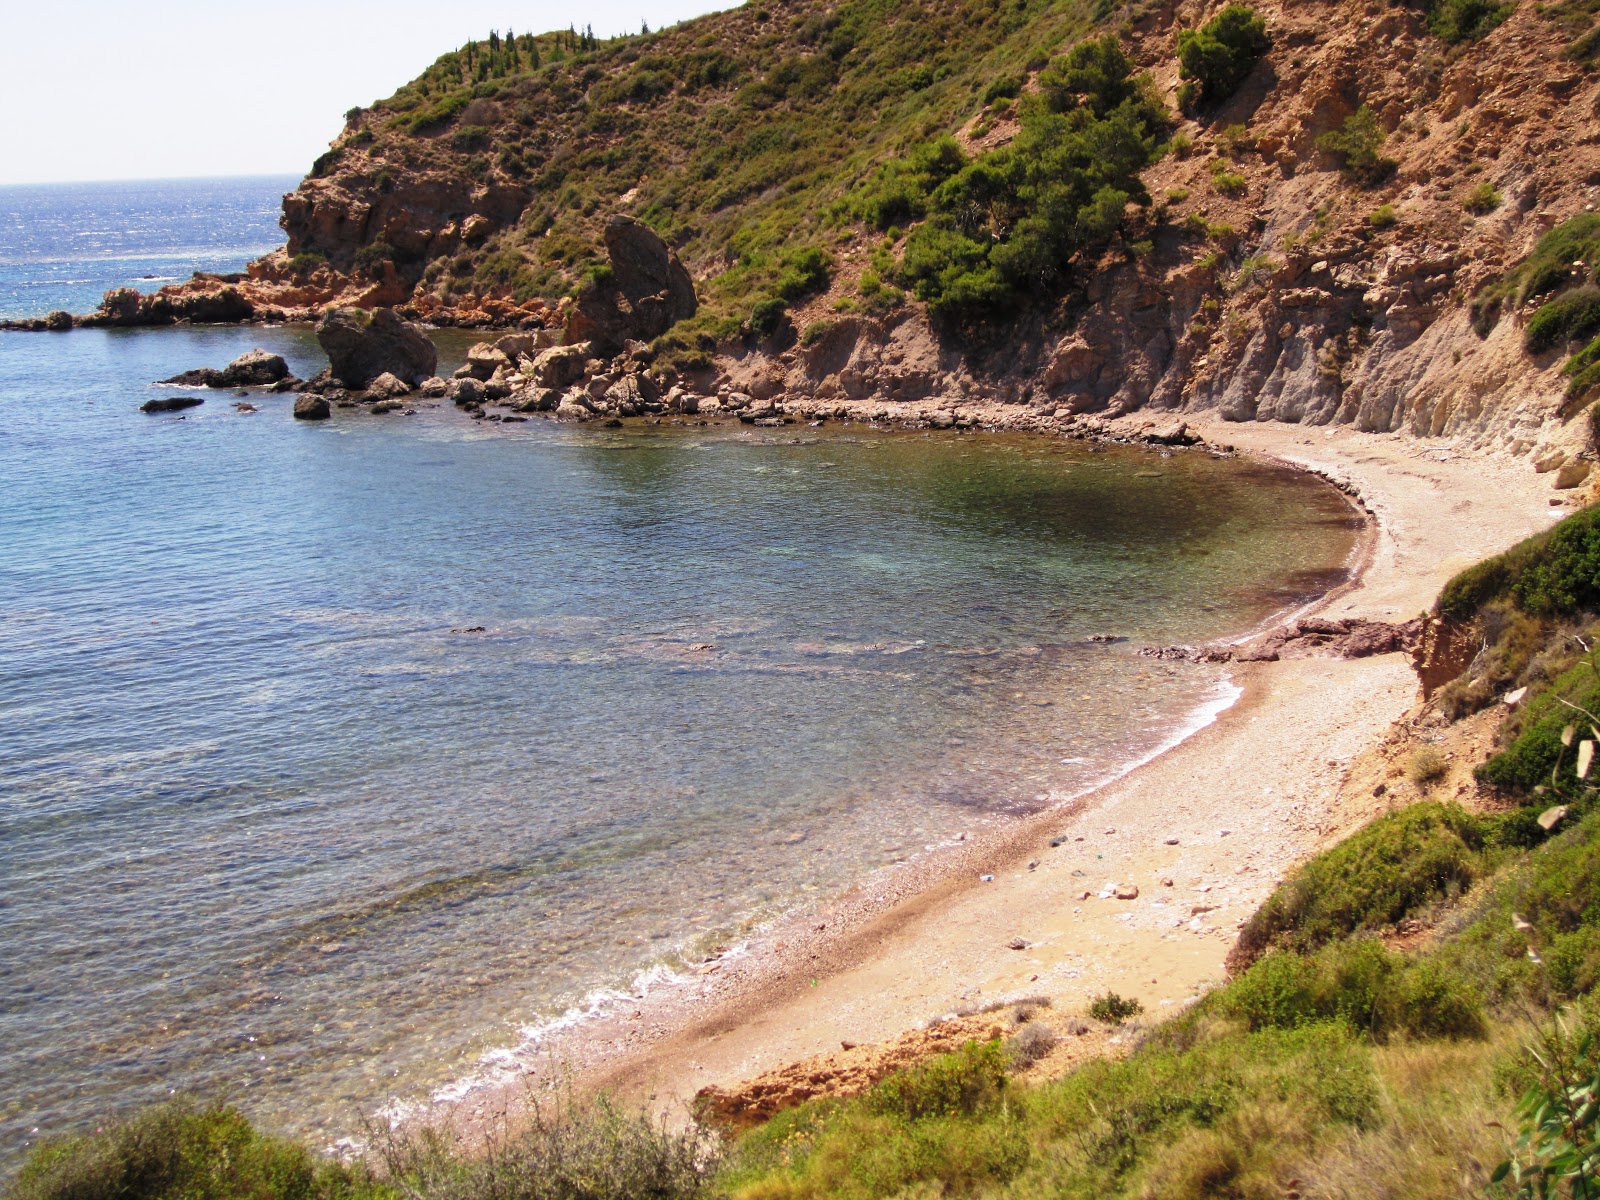 Photo of Sicaksu beach IV with spacious multi bays